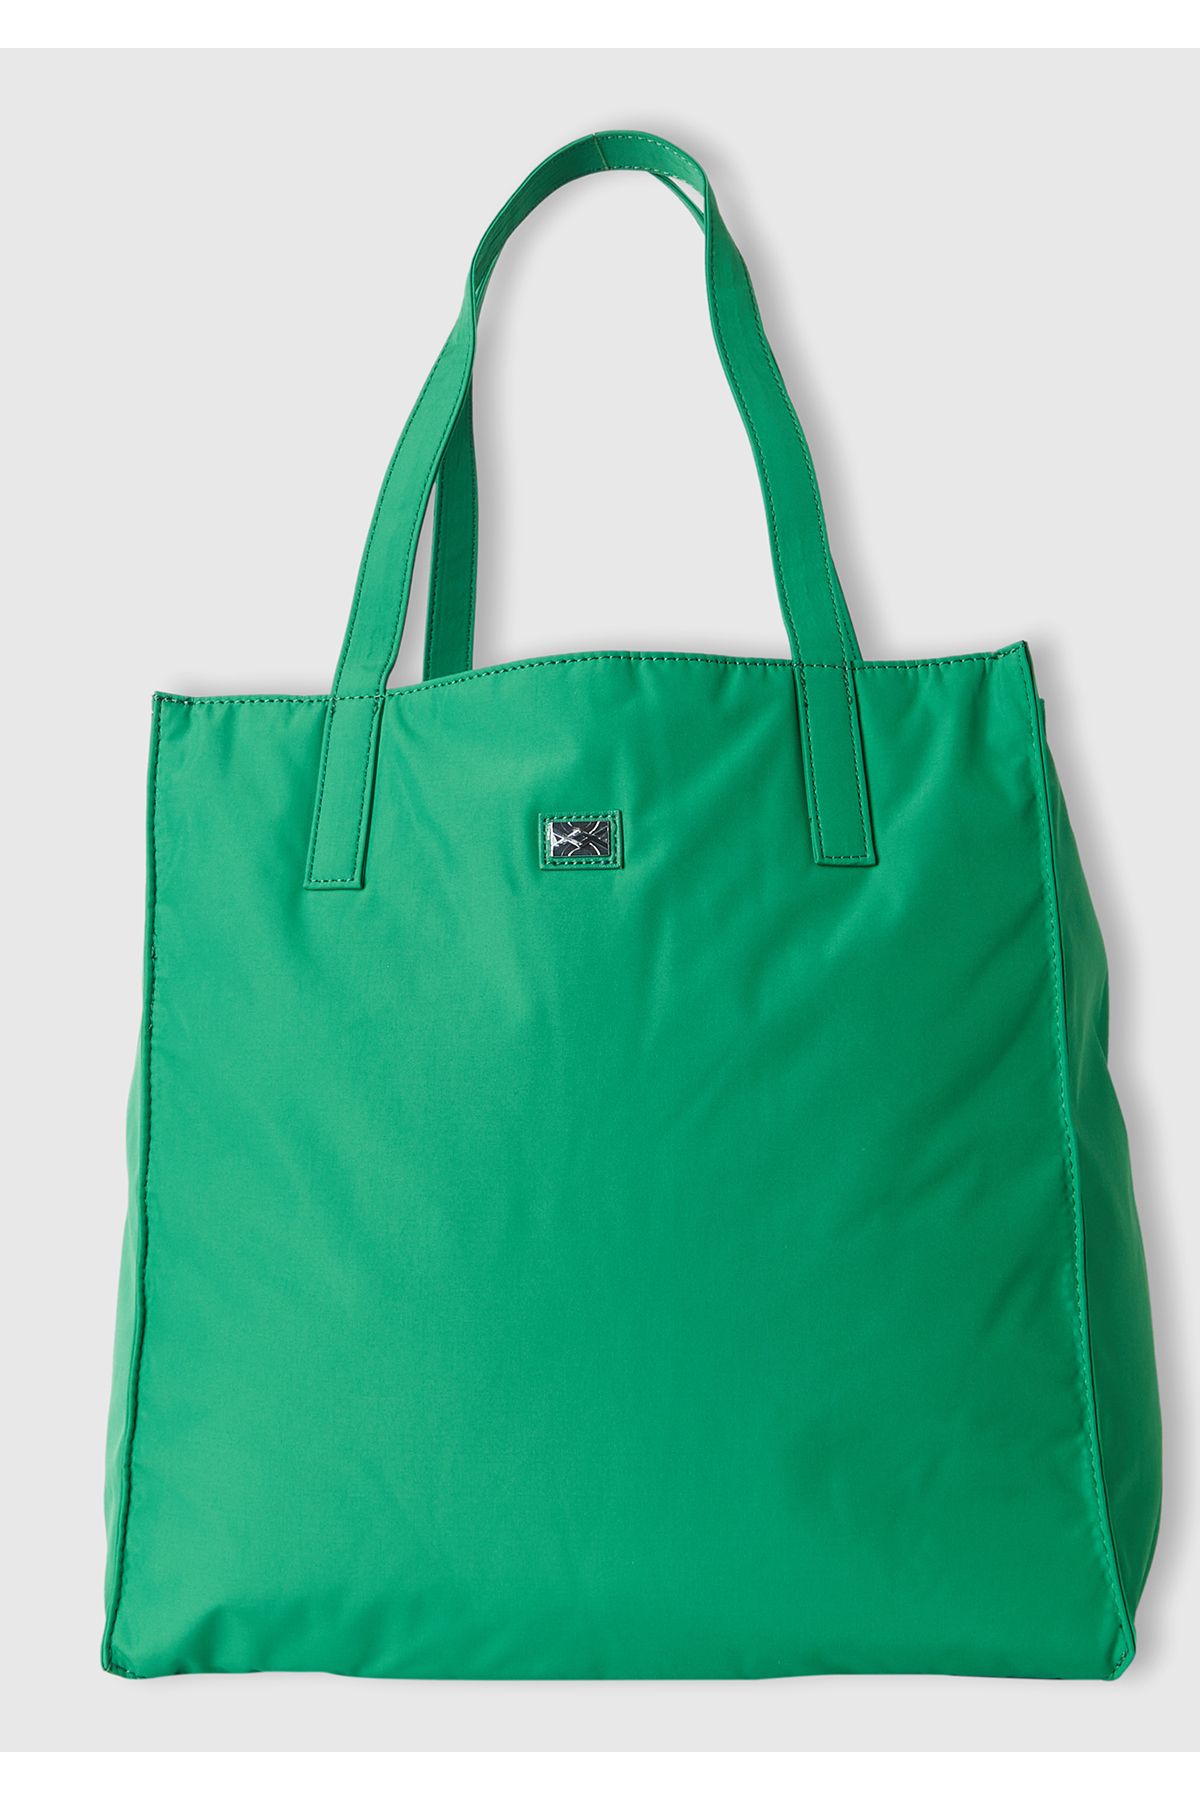 United Colors of Benetton Kadın Yeşil Shopper Çanta